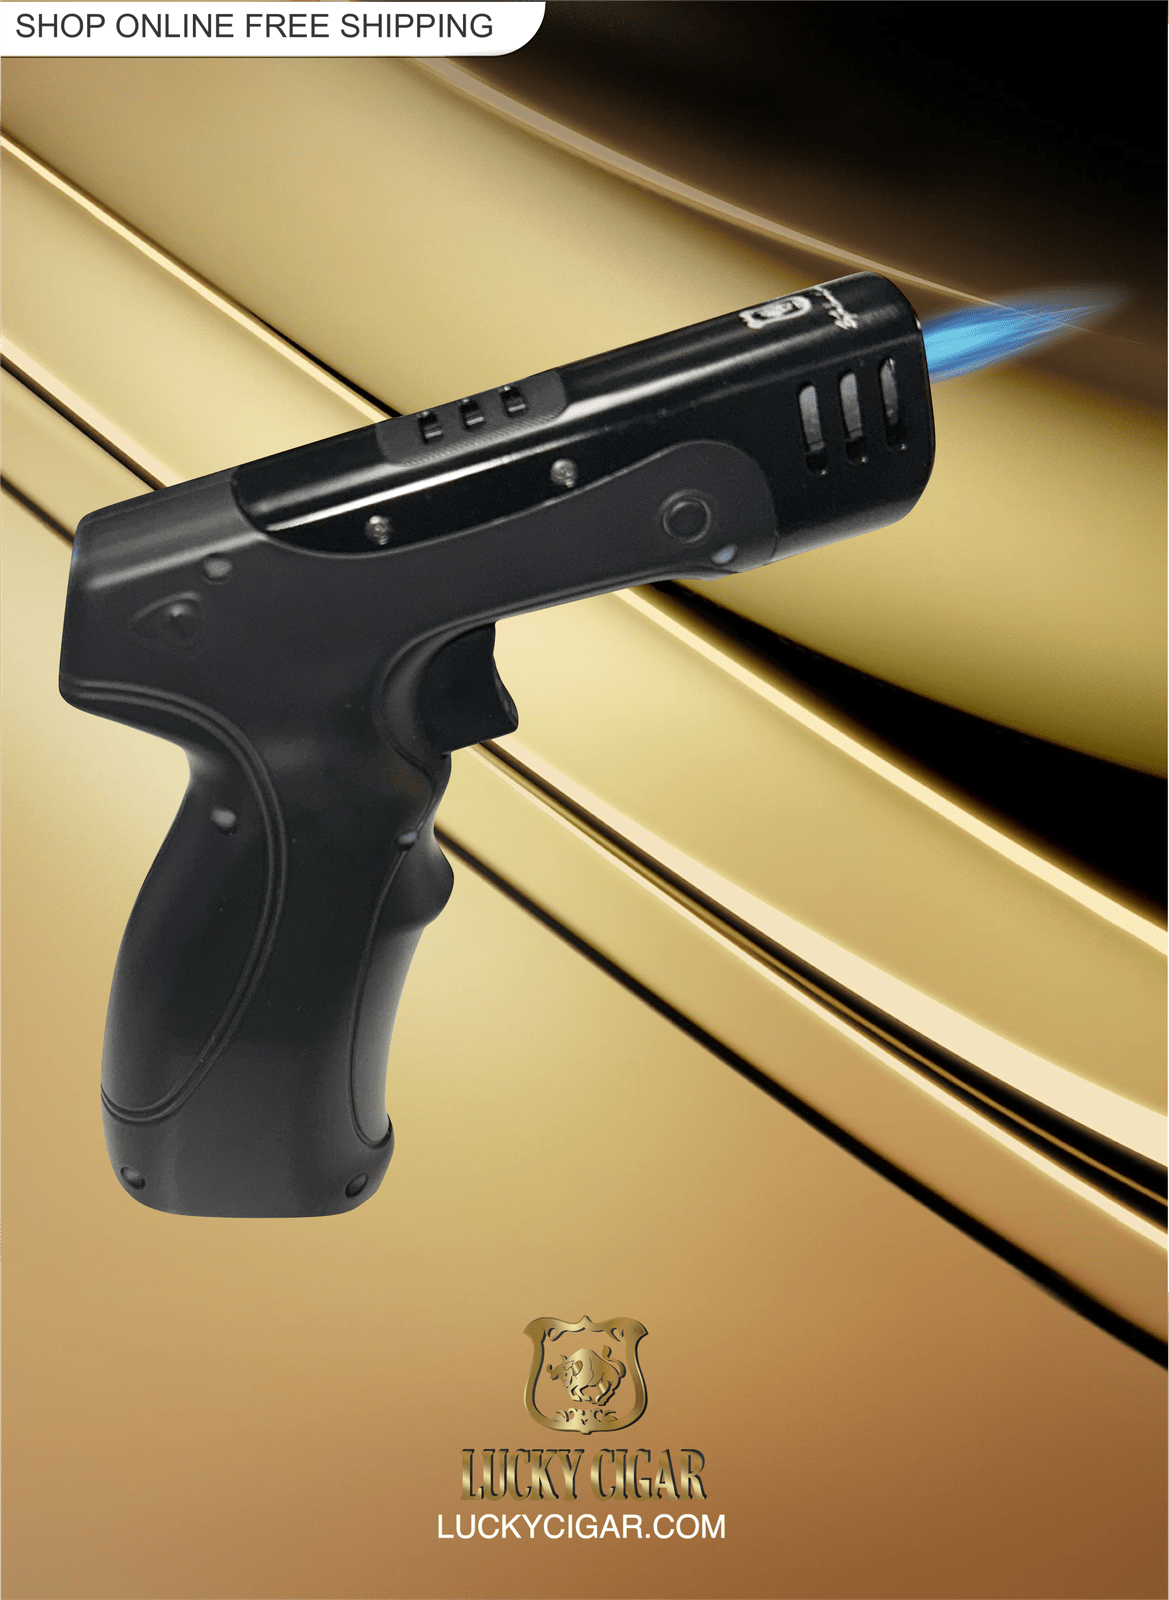 Cigar Lifestyle Accessories: Torch Lighter in Black Gun